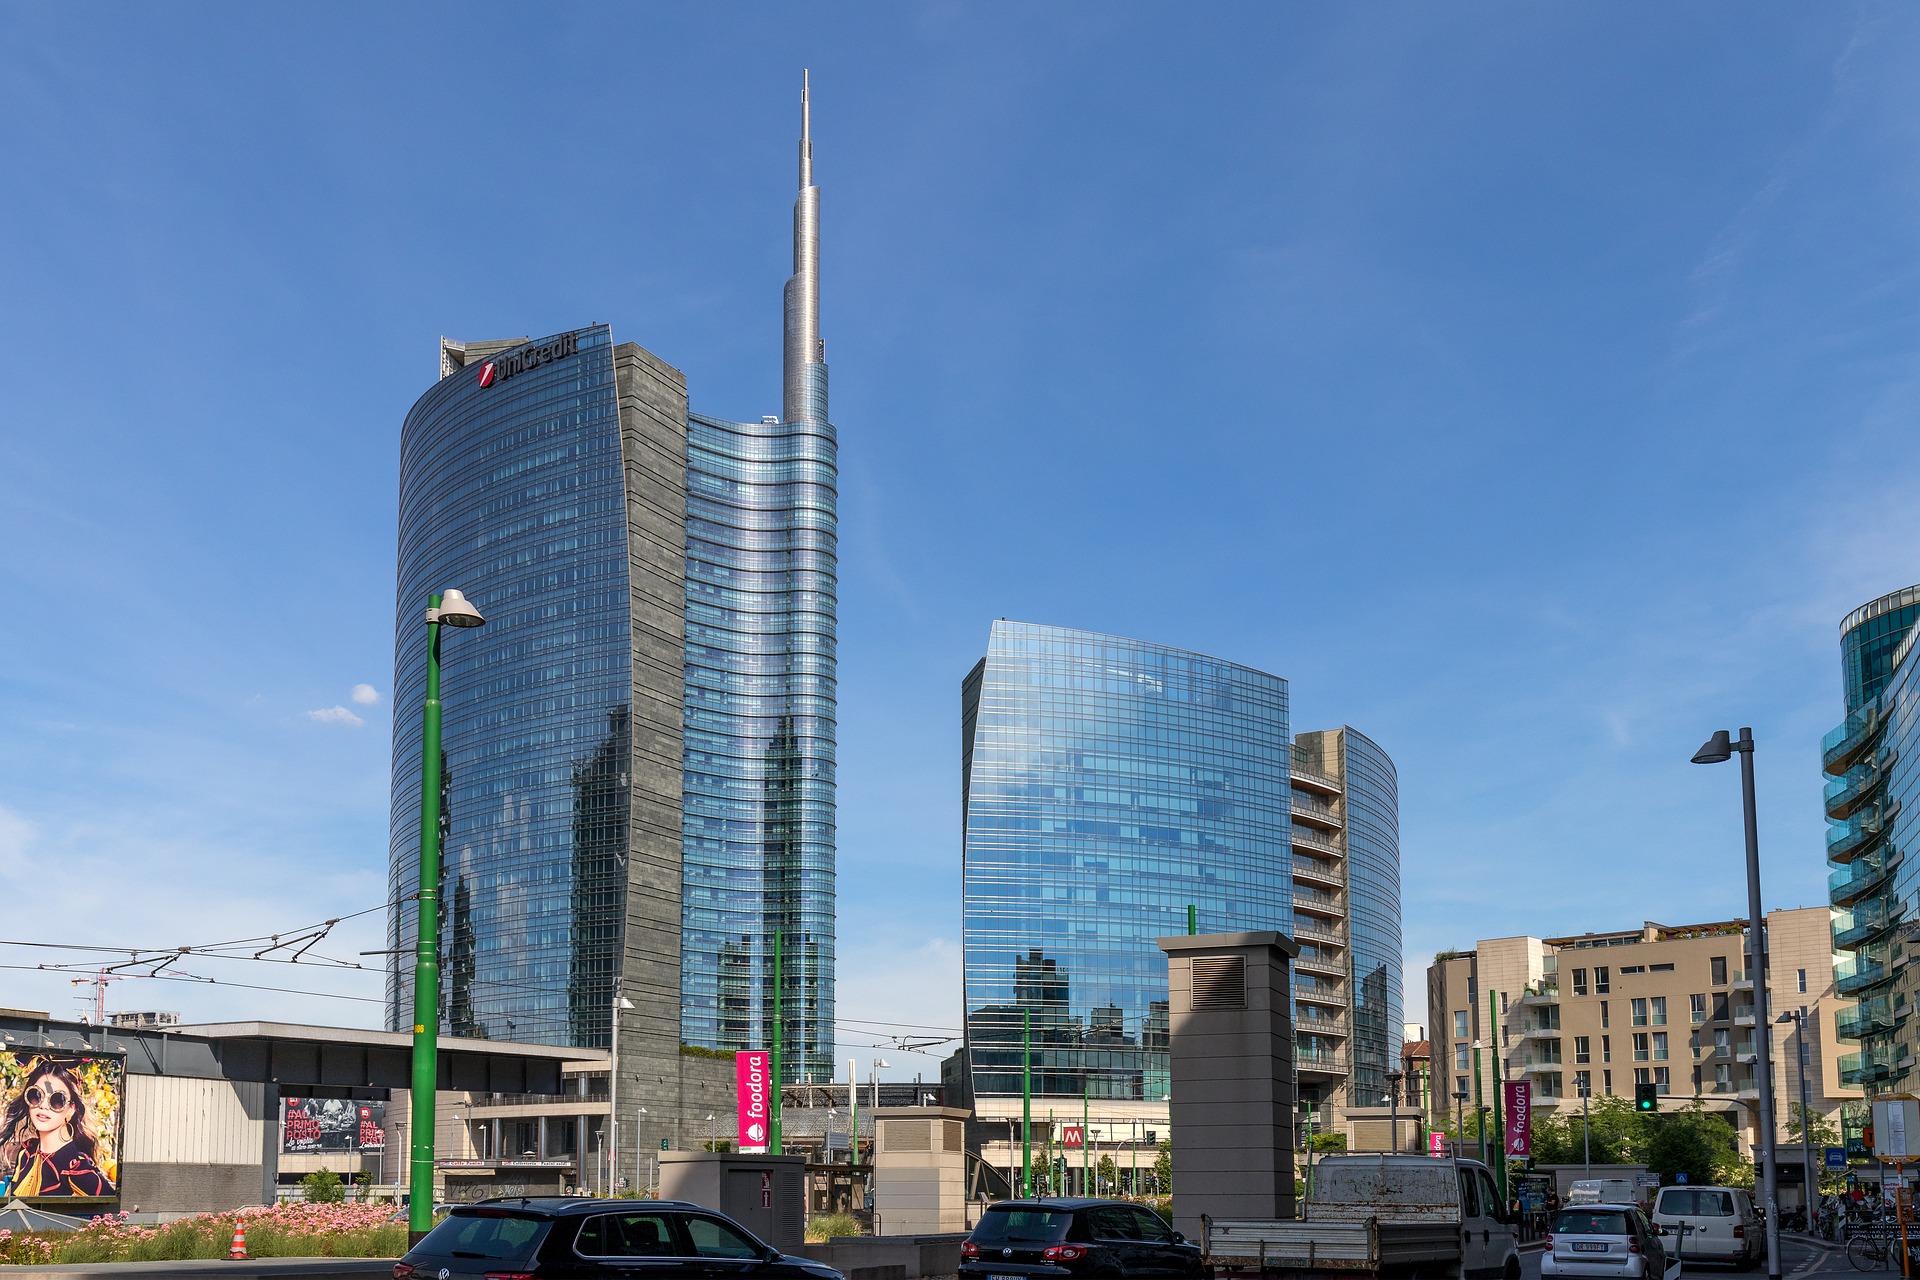 La Unicredt Tower di Milano in zona Porta Nuova